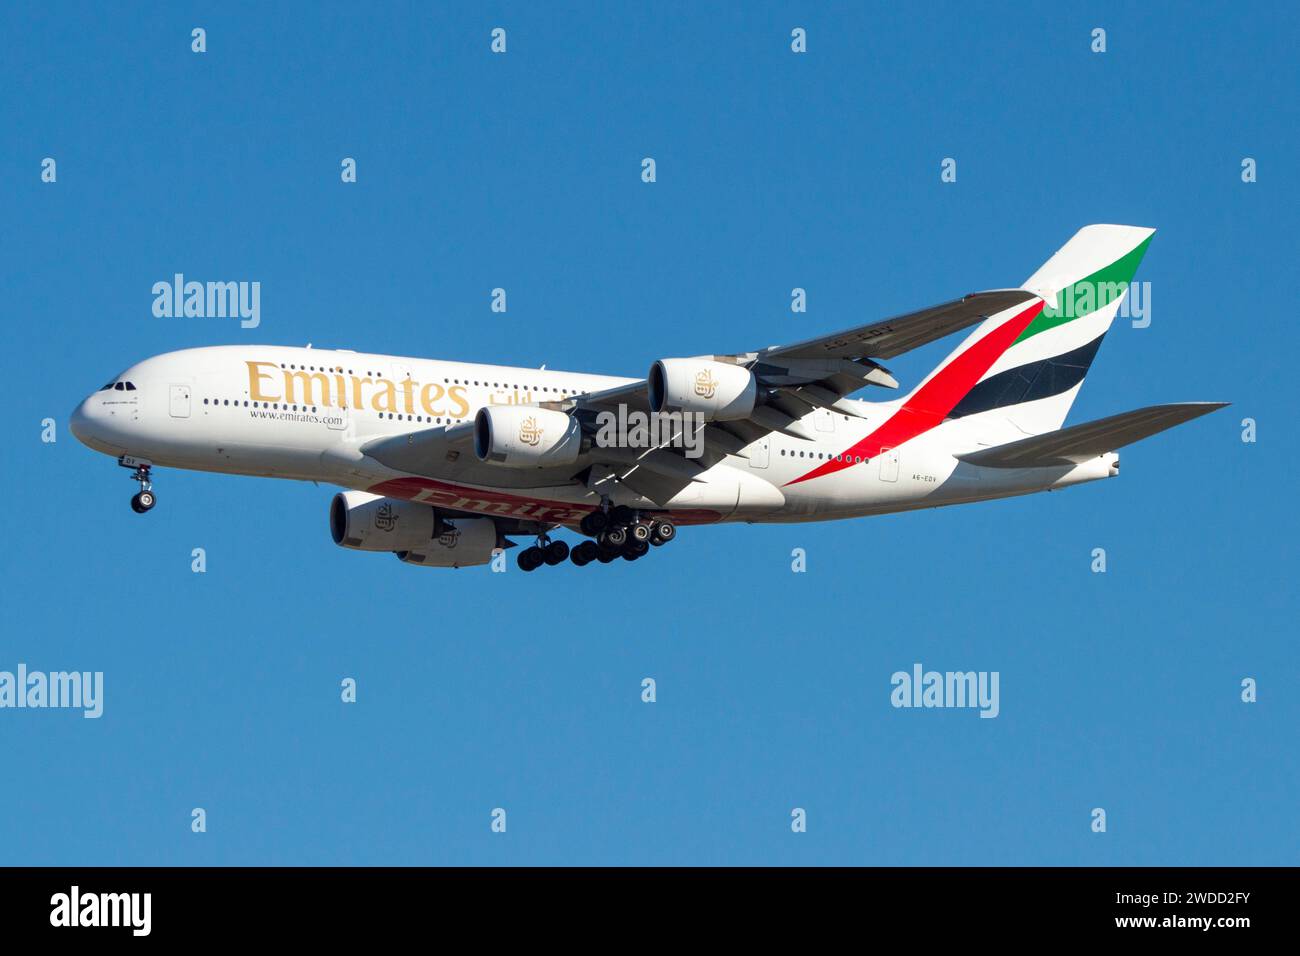 Airbus A380 aereo di linea della compagnia aerea Emirates che atterra a Madrid Foto Stock